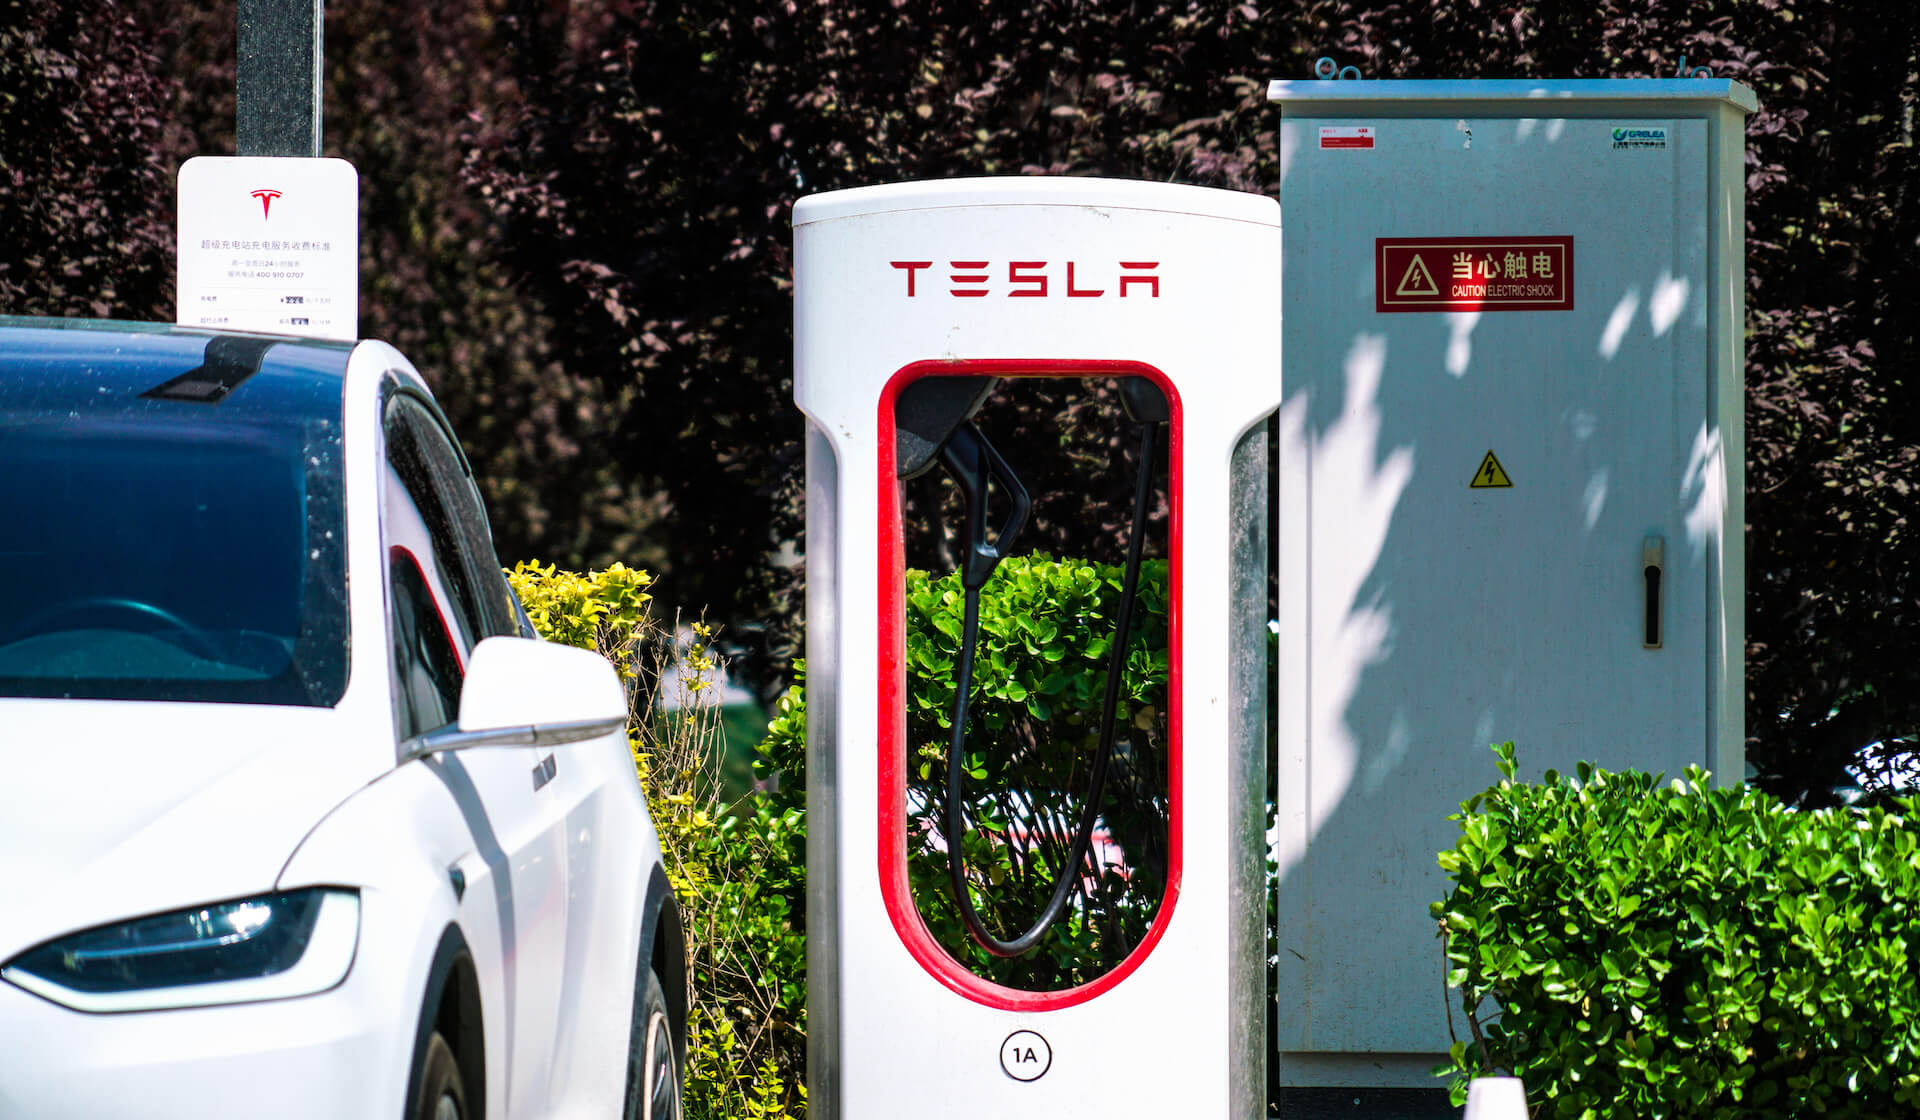 Tesla Supercharger Station In Beijing